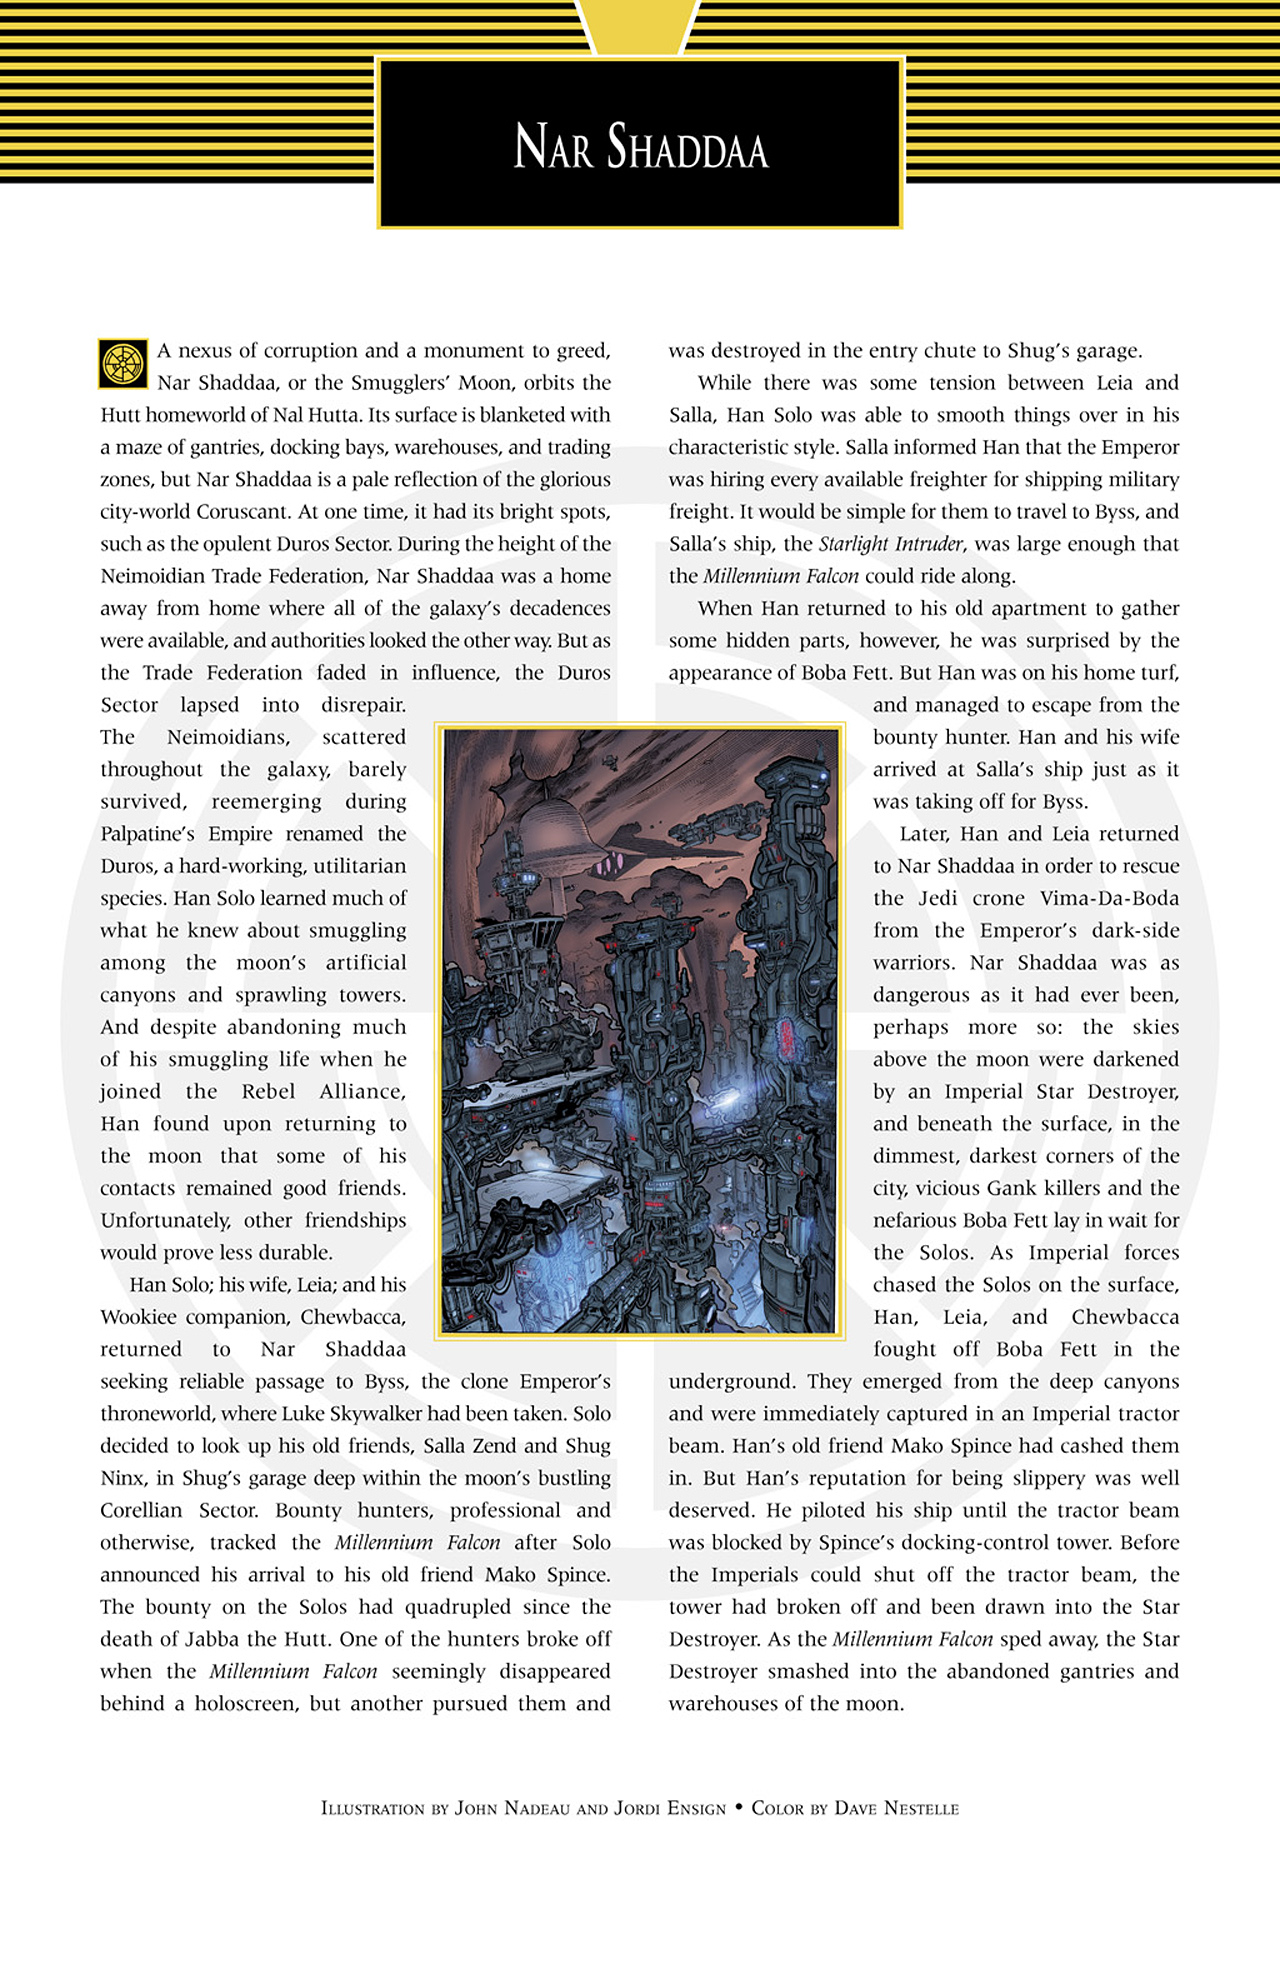 Read online Star Wars Handbook comic -  Issue #3 - 16